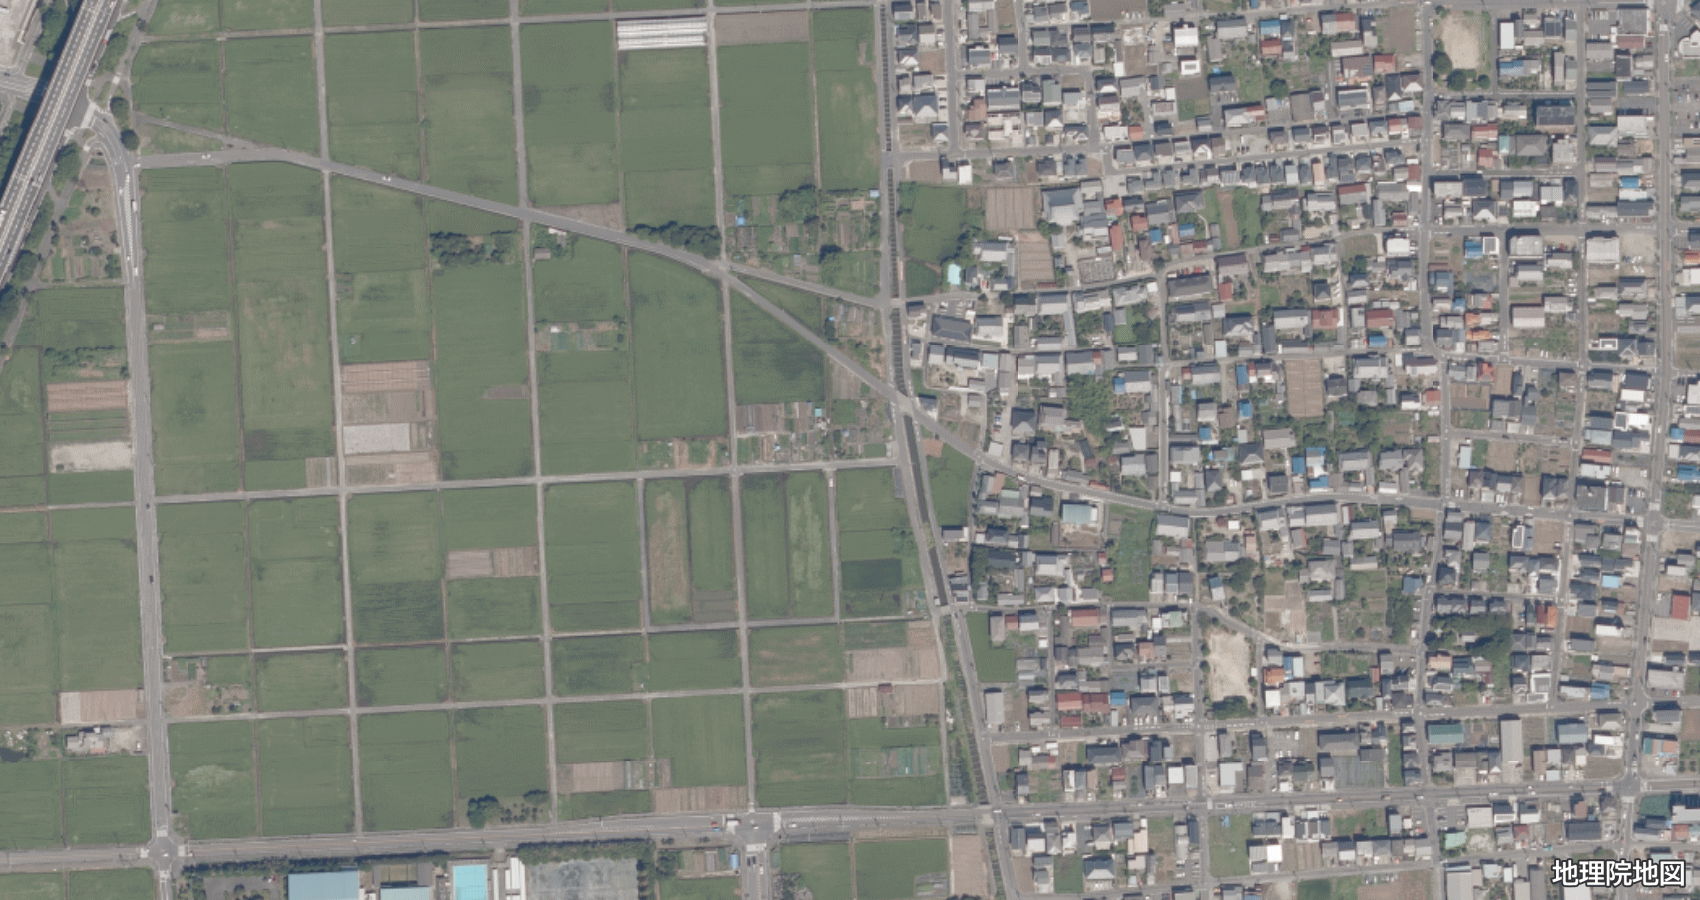 清須市上条 衛星地図 2020